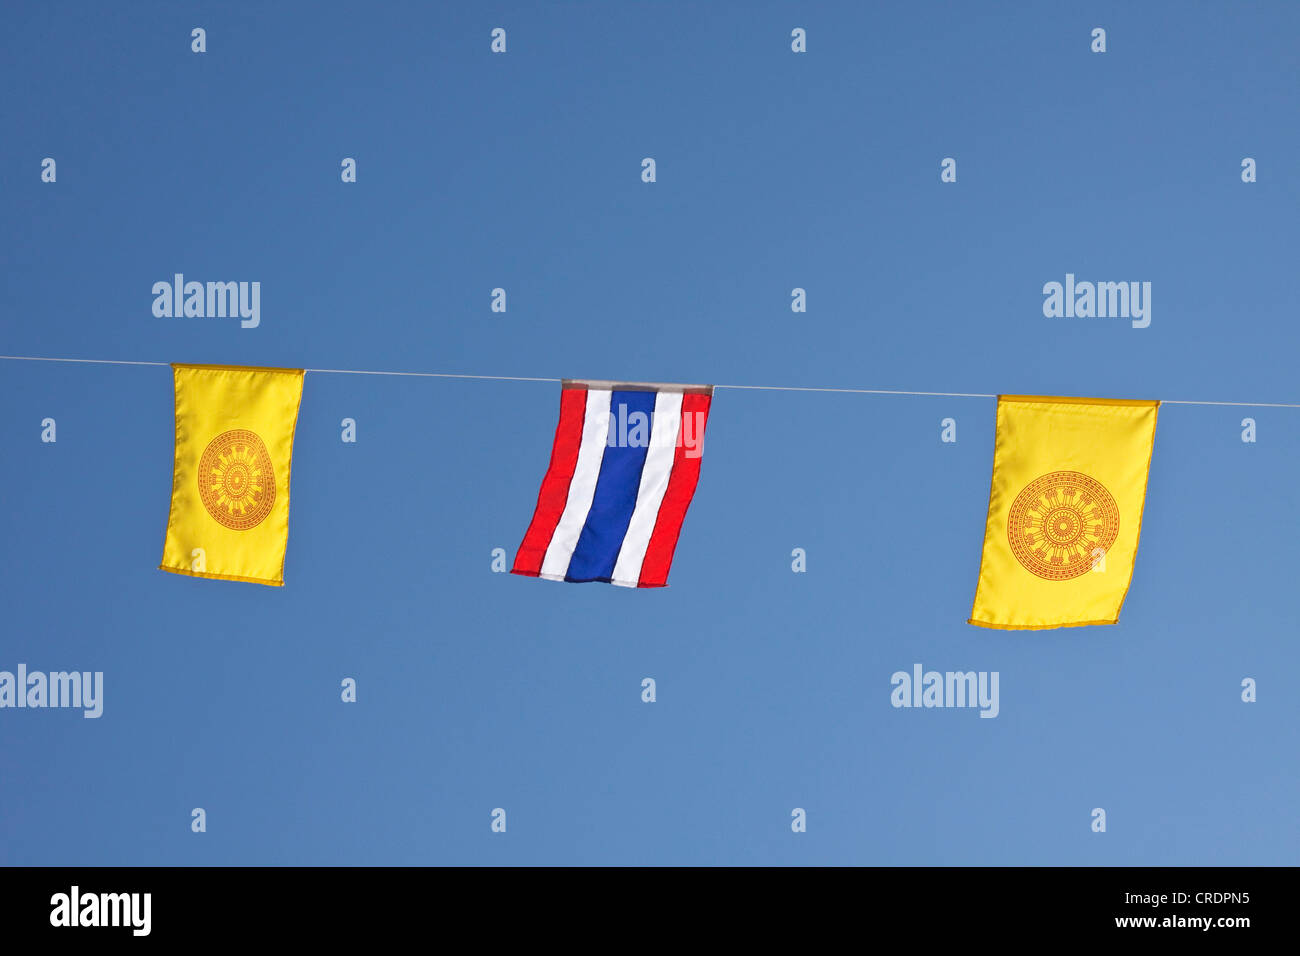 Flagge von Thailand, genannt Thong-Thrai-Rong, Fahnen der thailändischen Königsfamilie, Thailand, Südostasien, Asien Stockfoto